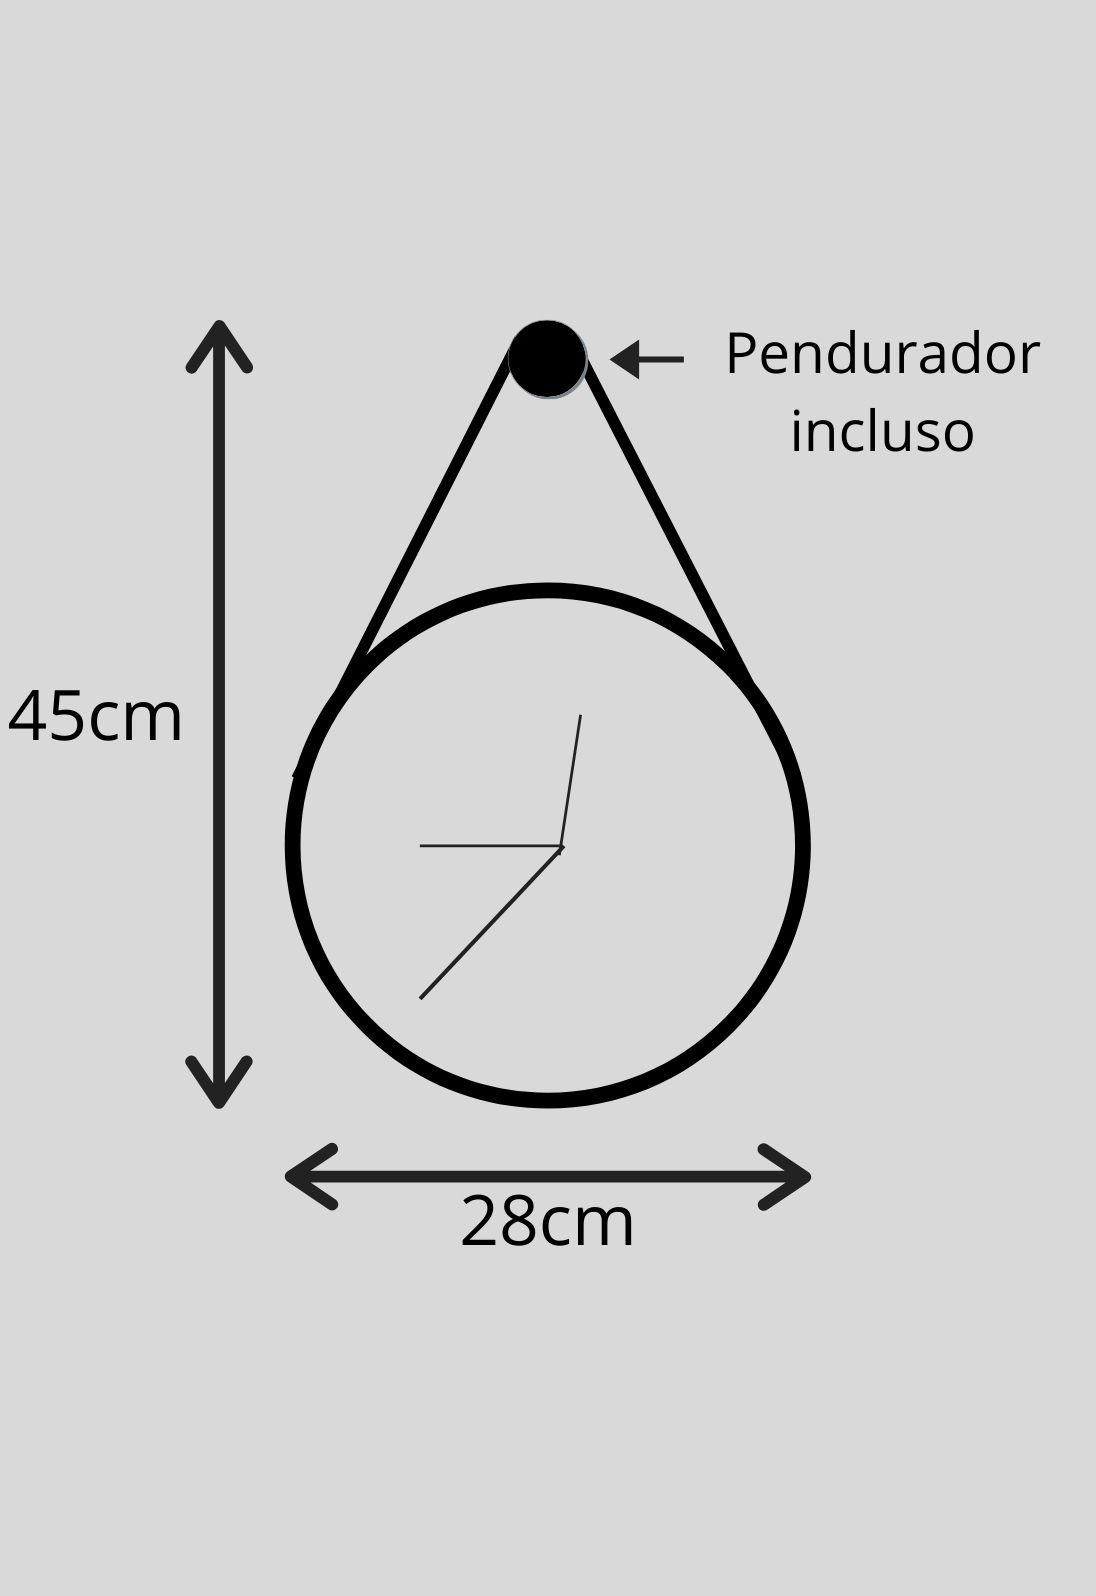 Relógio de Parede Minimalista em Madeira Branco e Detalhes em Preto com Alça + Pendurador